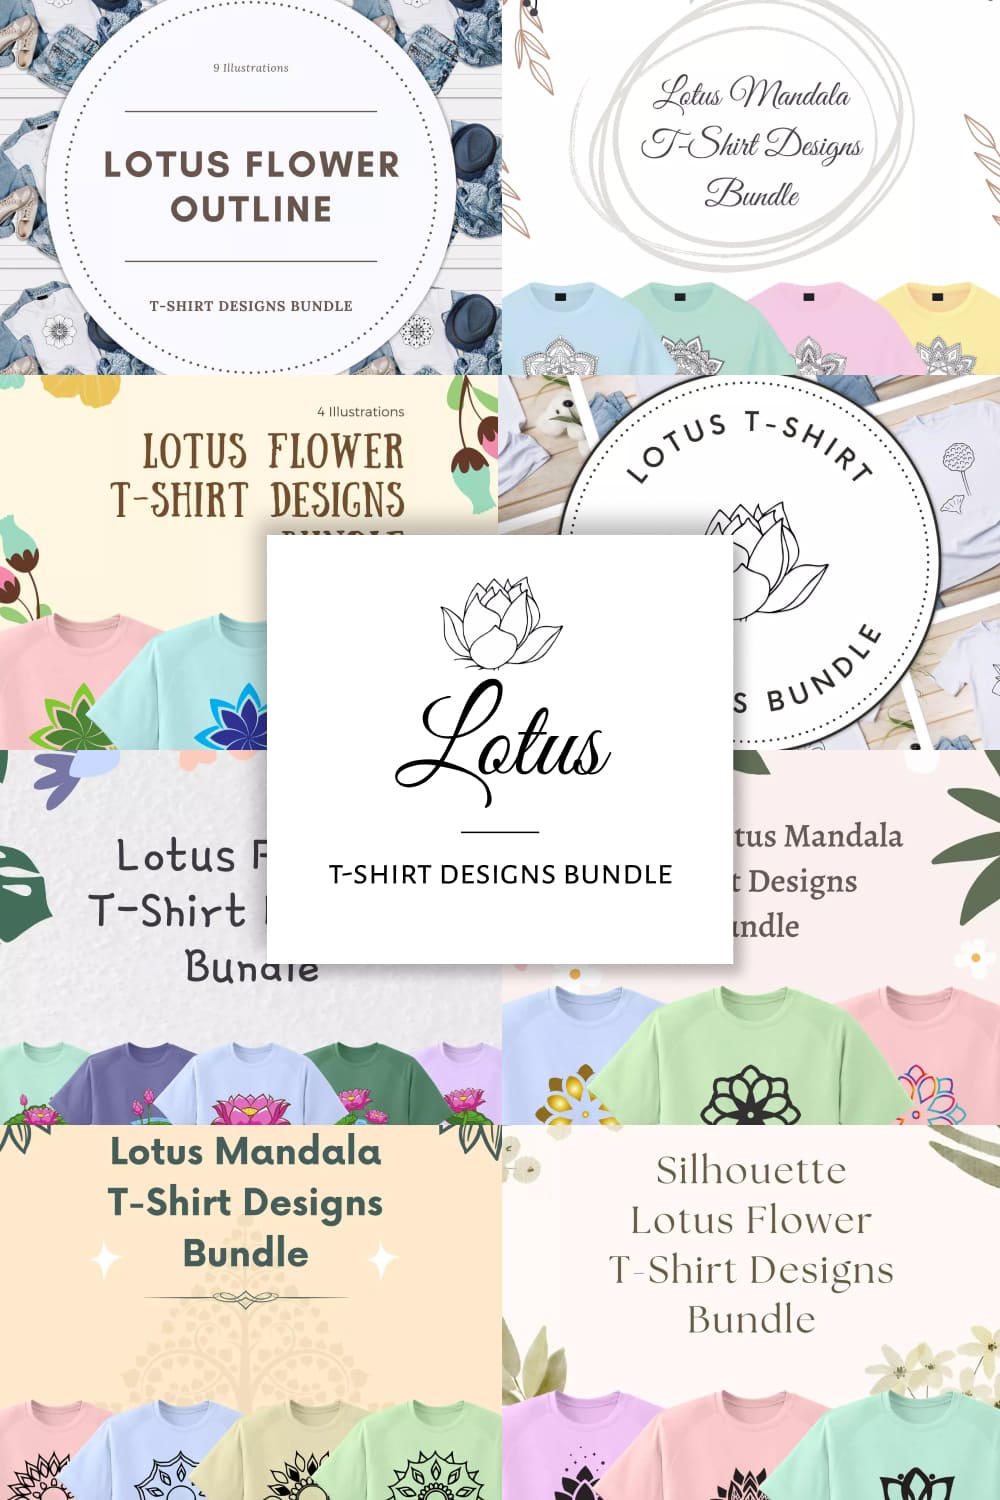 Lotus t-shirt designs bundle, picture for Pinterest.